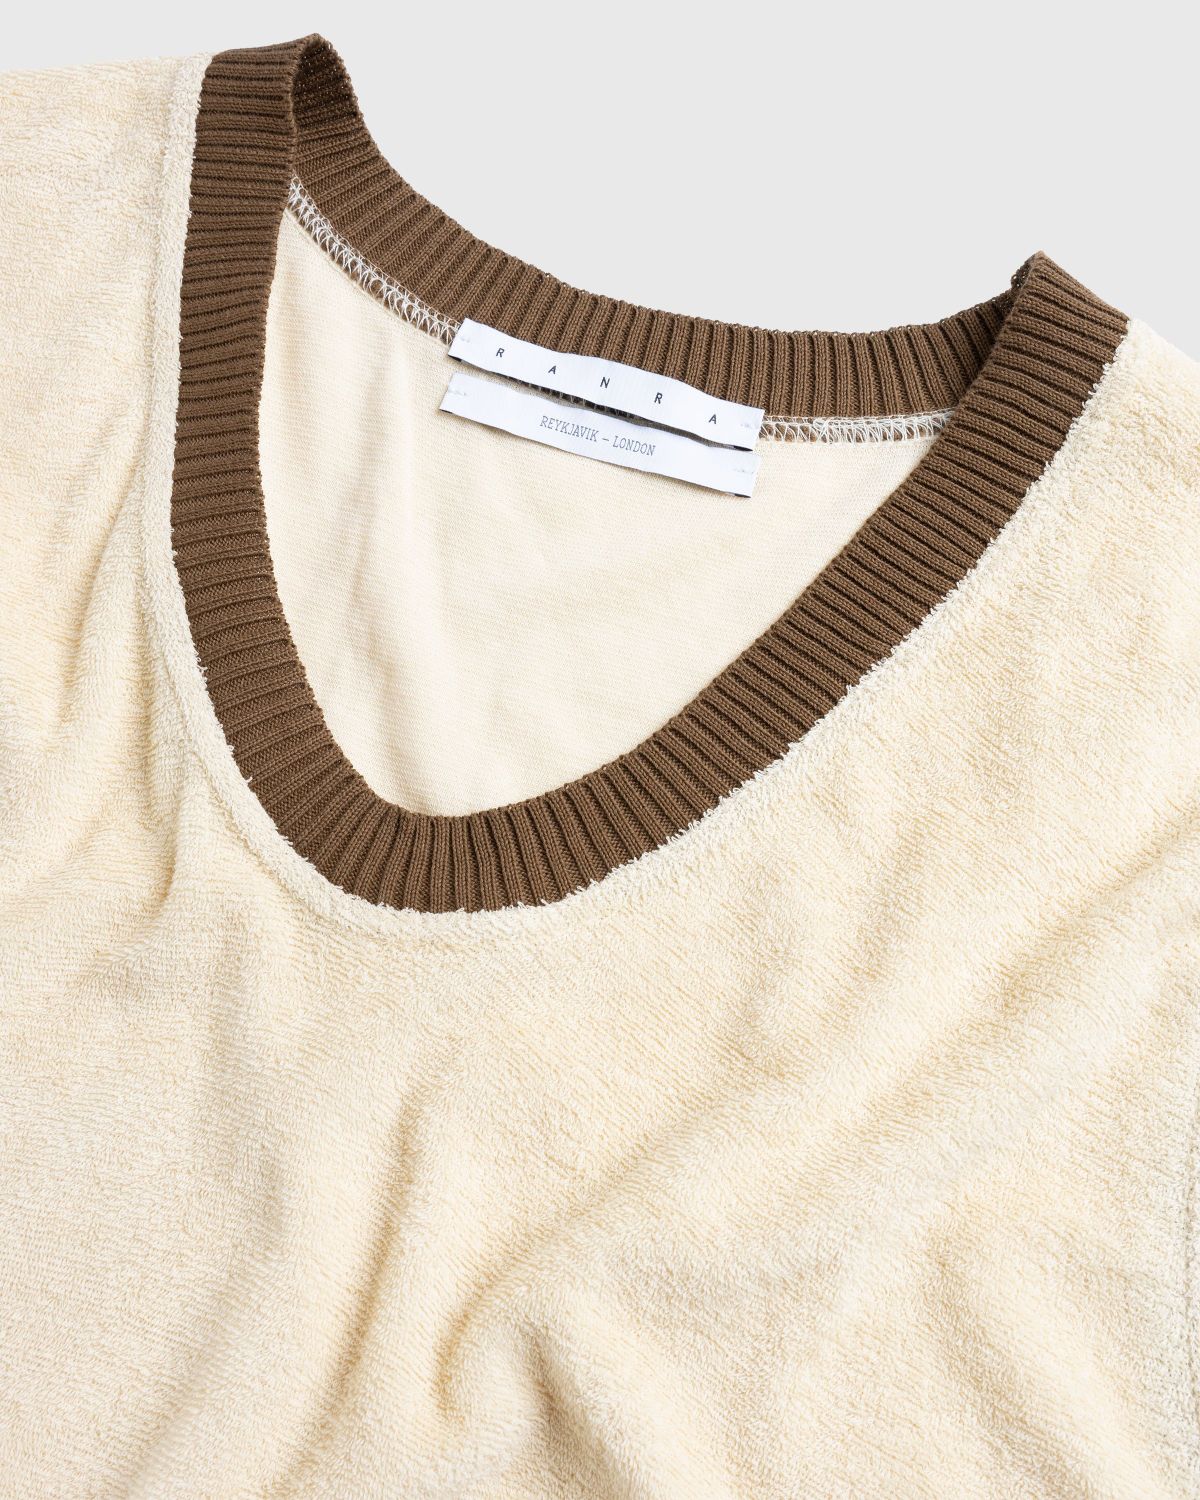 RANRA – Mistur Sweater Vest Beige - Men Tops - Beige - Image 5